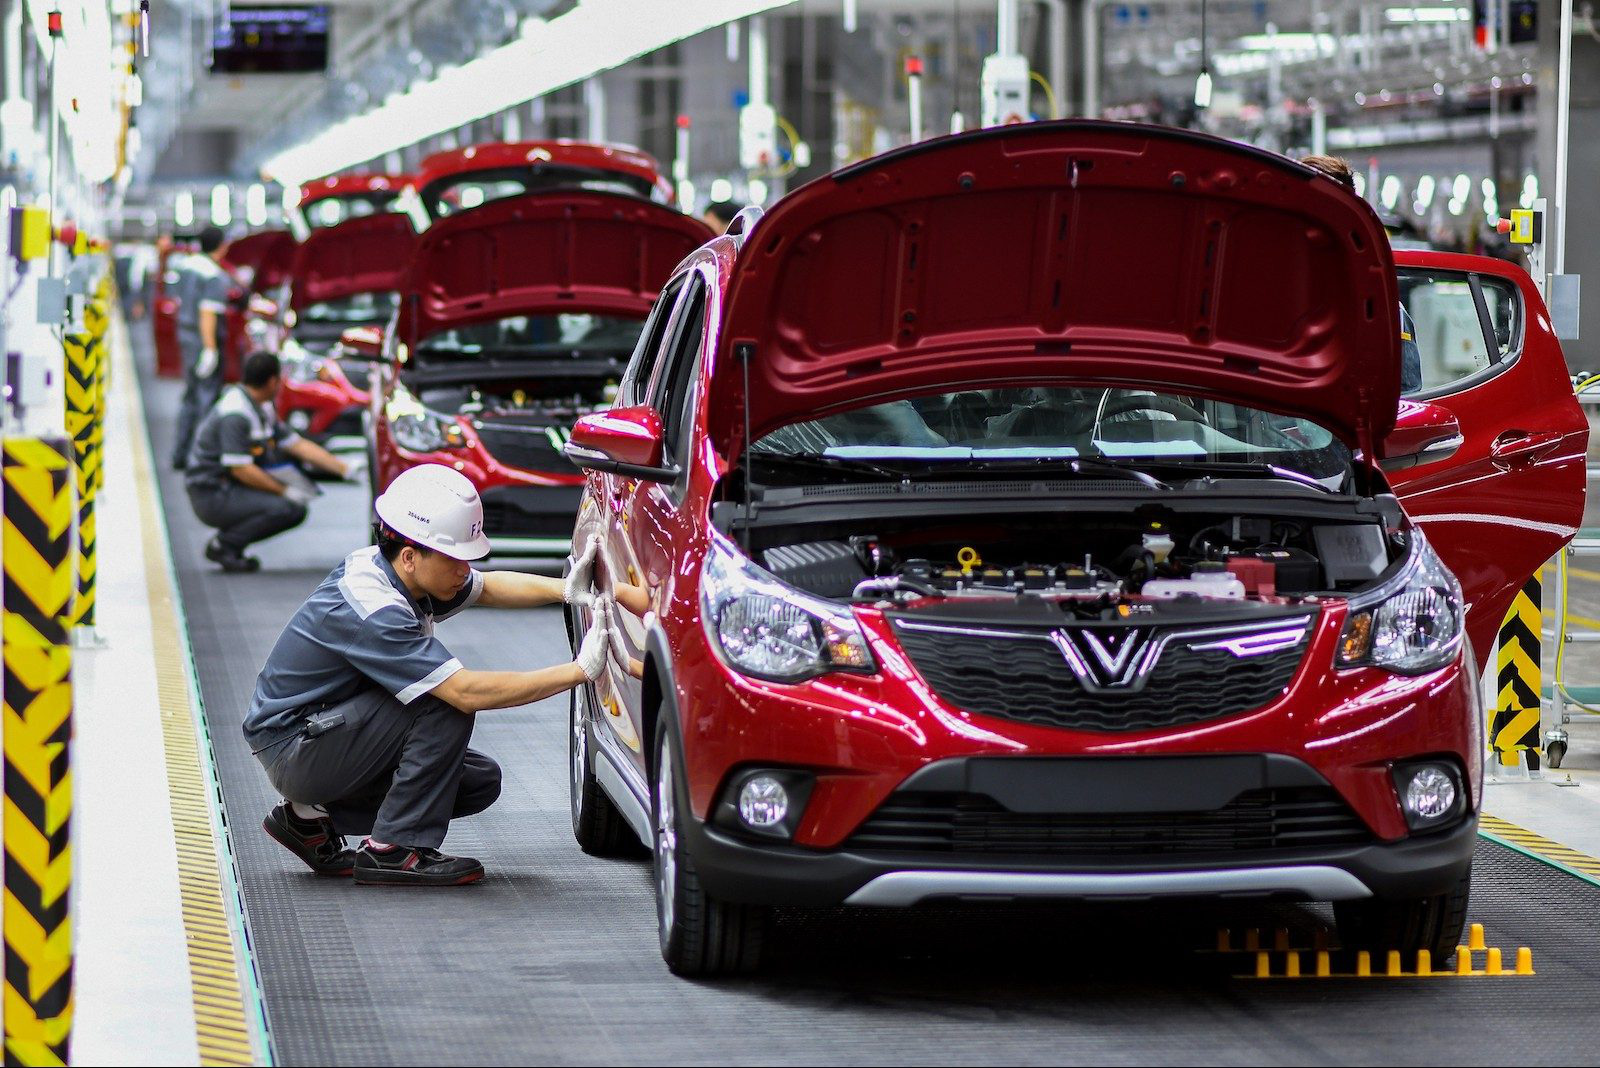 VinFast - biểu tượng của sự tự tin, sáng tạo và kiên trì của người Việt Nam. Với nỗ lực không ngừng để phát triển và cải tiến, VinFast đang trở thành một trong những thương hiệu ô tô đáng chú ý nhất trong nước và quốc tế.